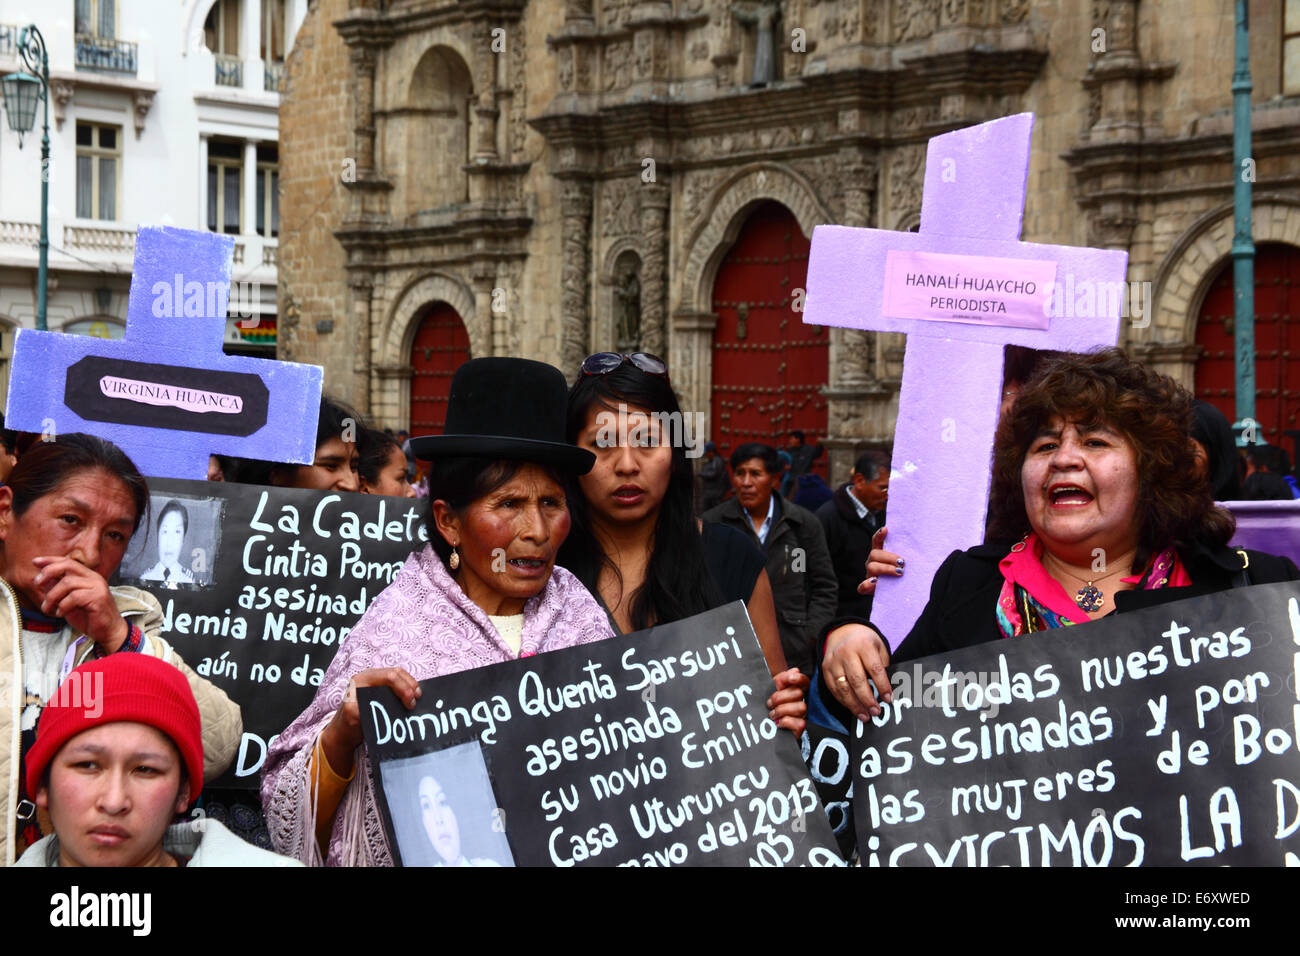 La Paz, Bolivien, 1. September 2014. Womens Rechtenaktivisten und Unterstützer tragen Kreuze mit den Namen der Opfer während einer Kundgebung gegen Gewalt gegen Frauen zu protestieren. Der Marsch war auch den letzten Äußerungen von mehreren Kandidaten im aktuellen Wahlkampf, die scheinen, das Problem zu minimieren und diskriminieren Frauen zurückweise. Laut einem Bericht der WHO im Januar 2013 Bolivien ist das Land mit der höchsten Rate der Gewalt gegen Frauen in Lateinamerika, wurden seit 2006 453 Fälle von Frauenmorde in der aktuellen Regierung. Bildnachweis: James Brunker/Alamy Live Stockfoto